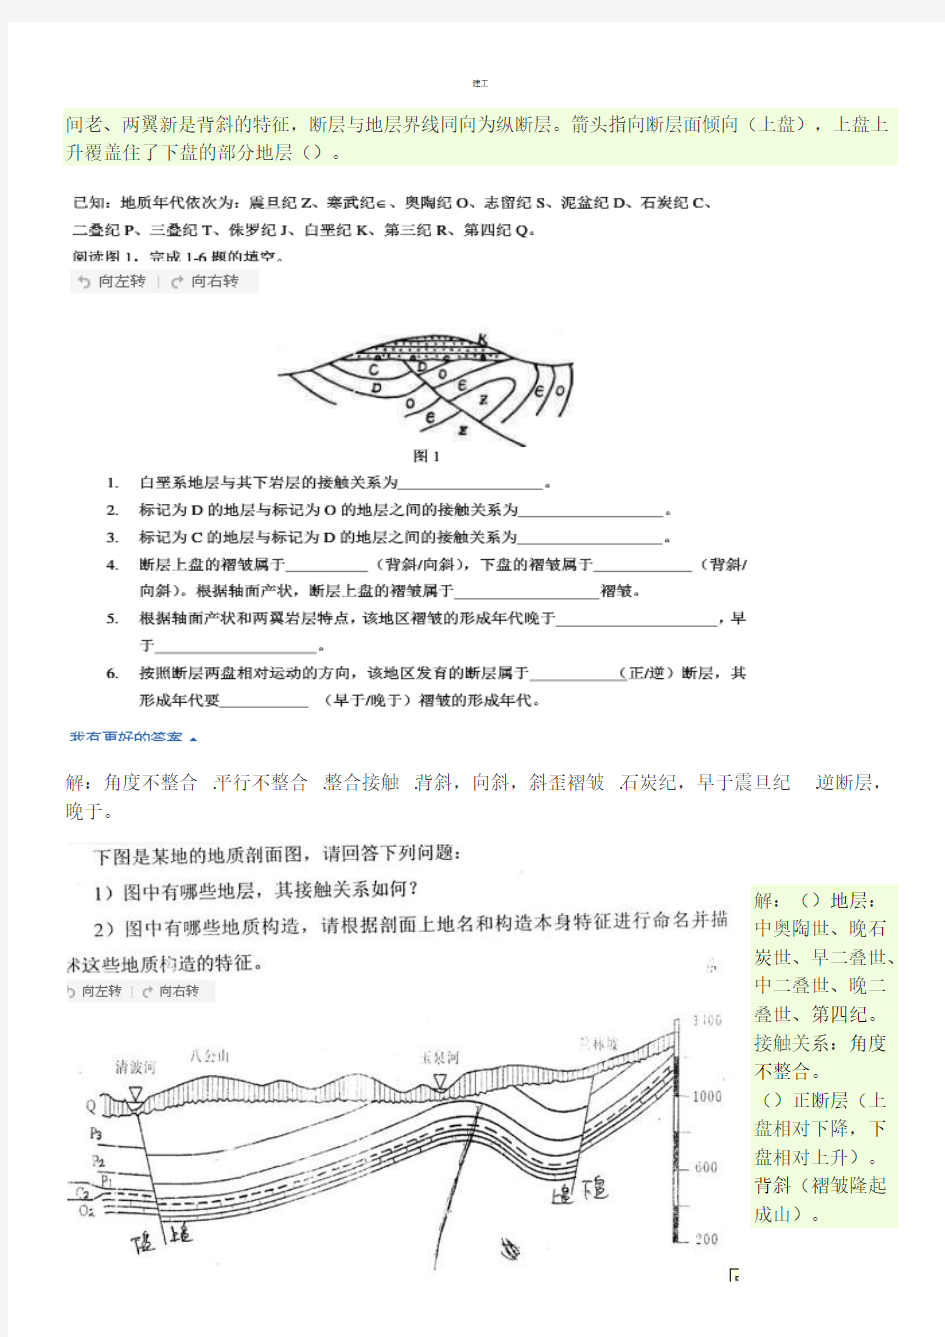 土木工程地质地质图题库(网上整理)(367)